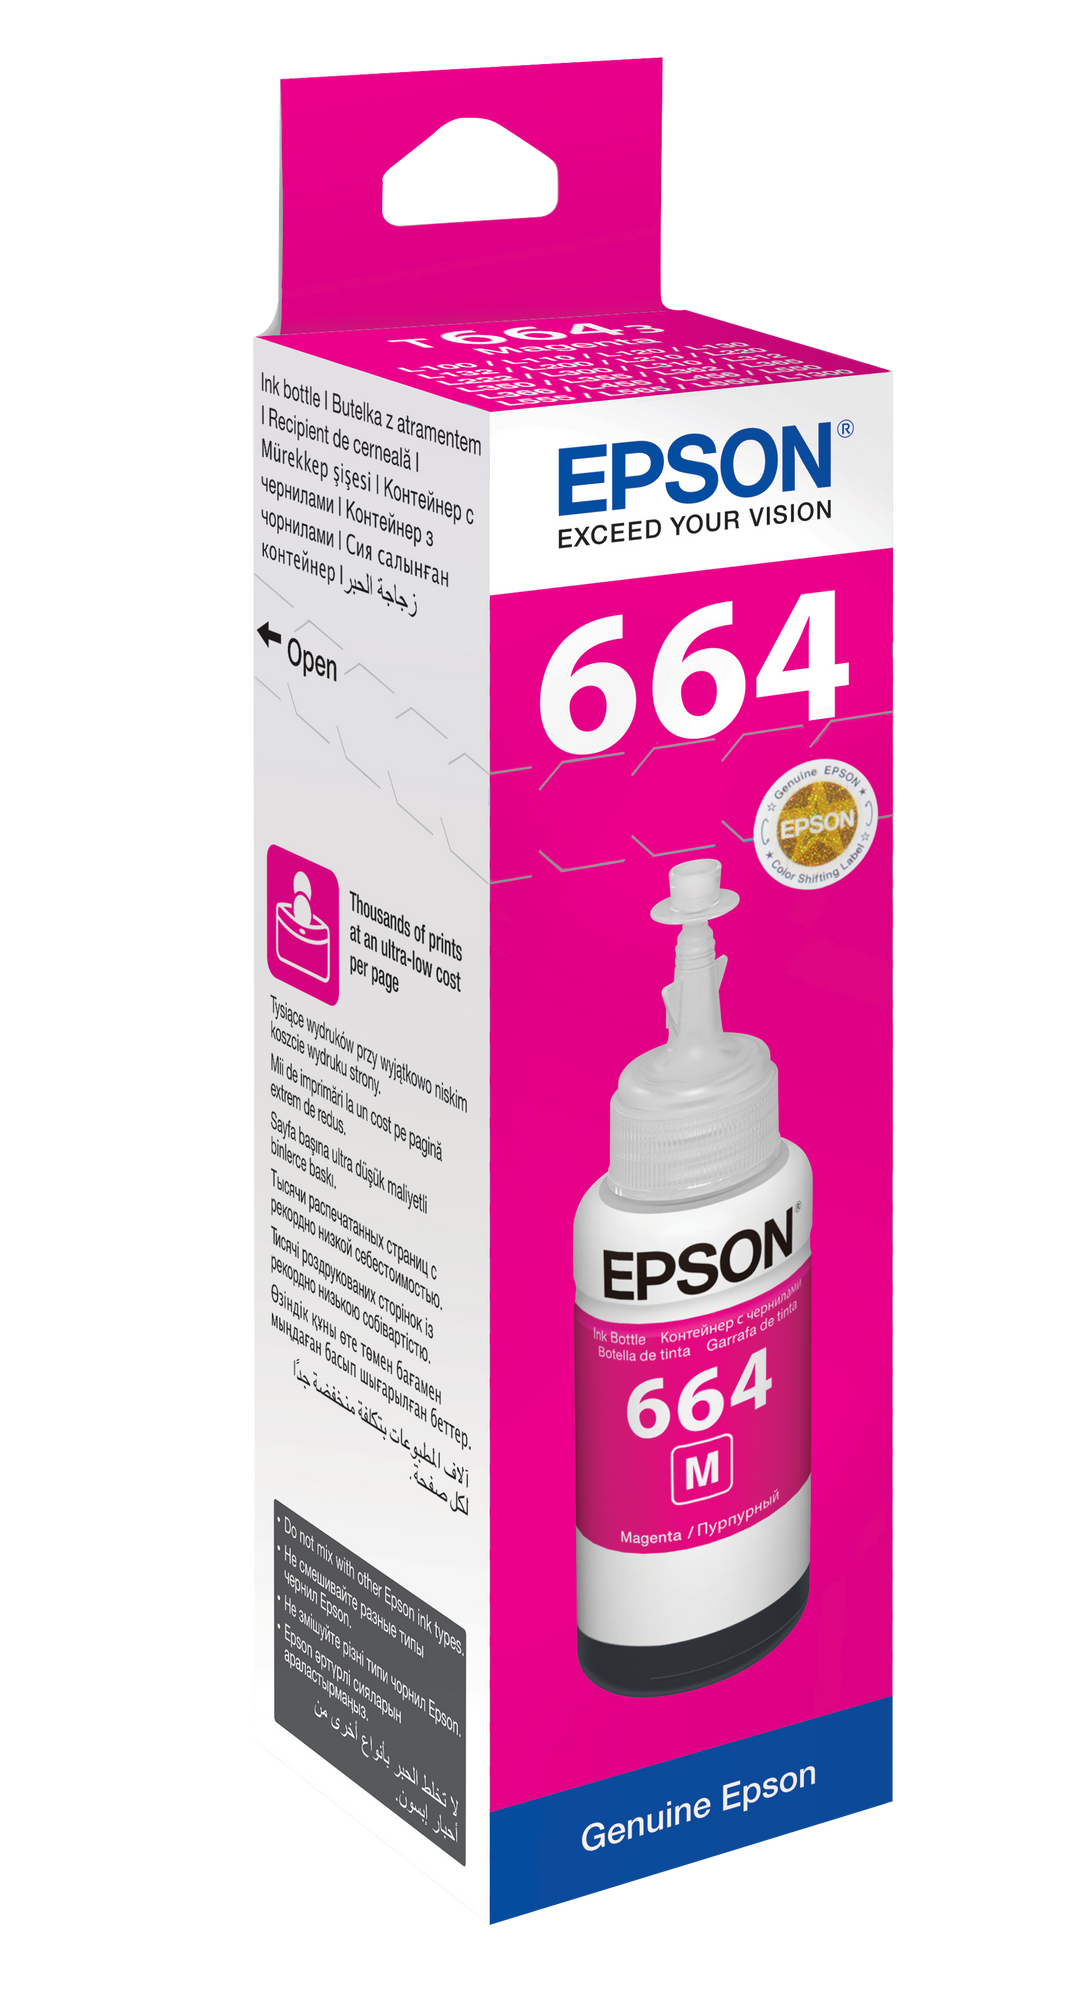 Epson Ink Bottles Magenta 70ml EcoTank L565/ L550/ L486/ L455/ L386/ L382/ L365/ L355/ L355/ L310/ L3070 ... Epson 6500 pages